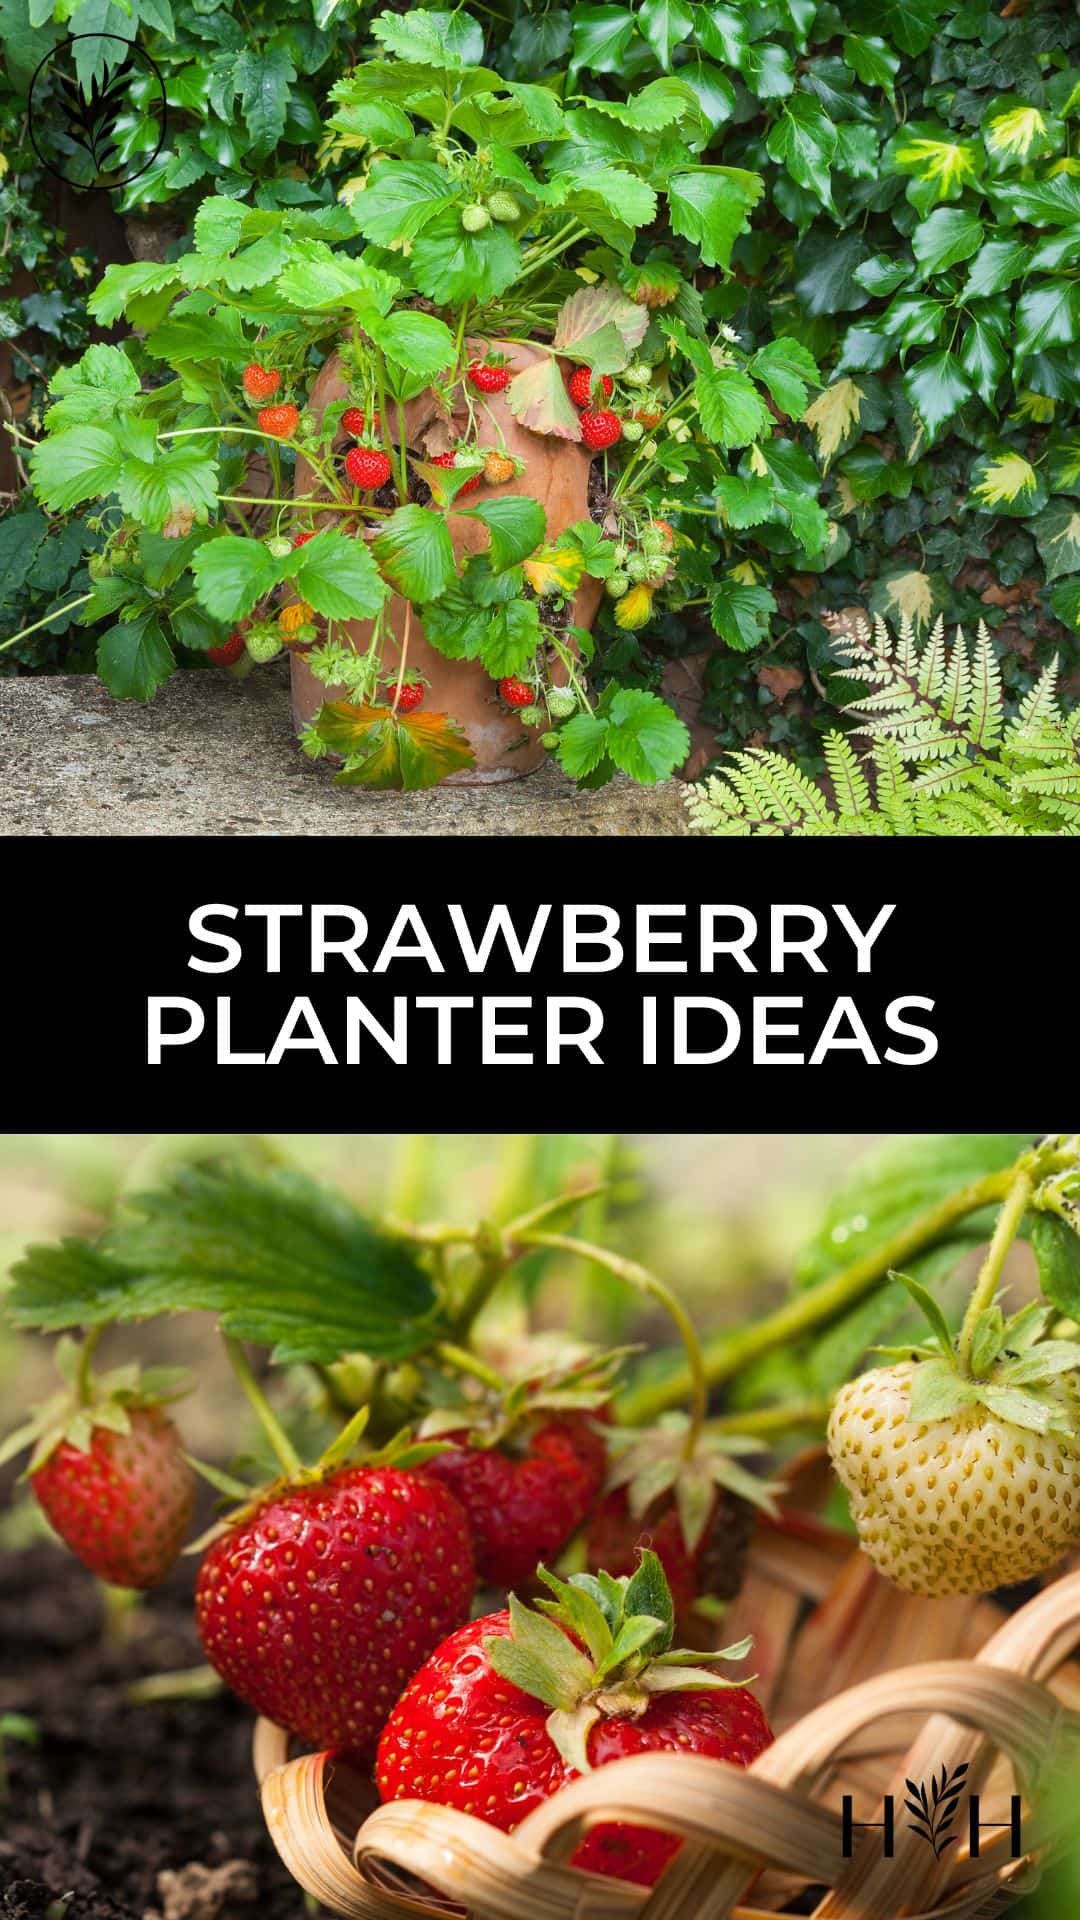 Strawberry planter ideas via @home4theharvest